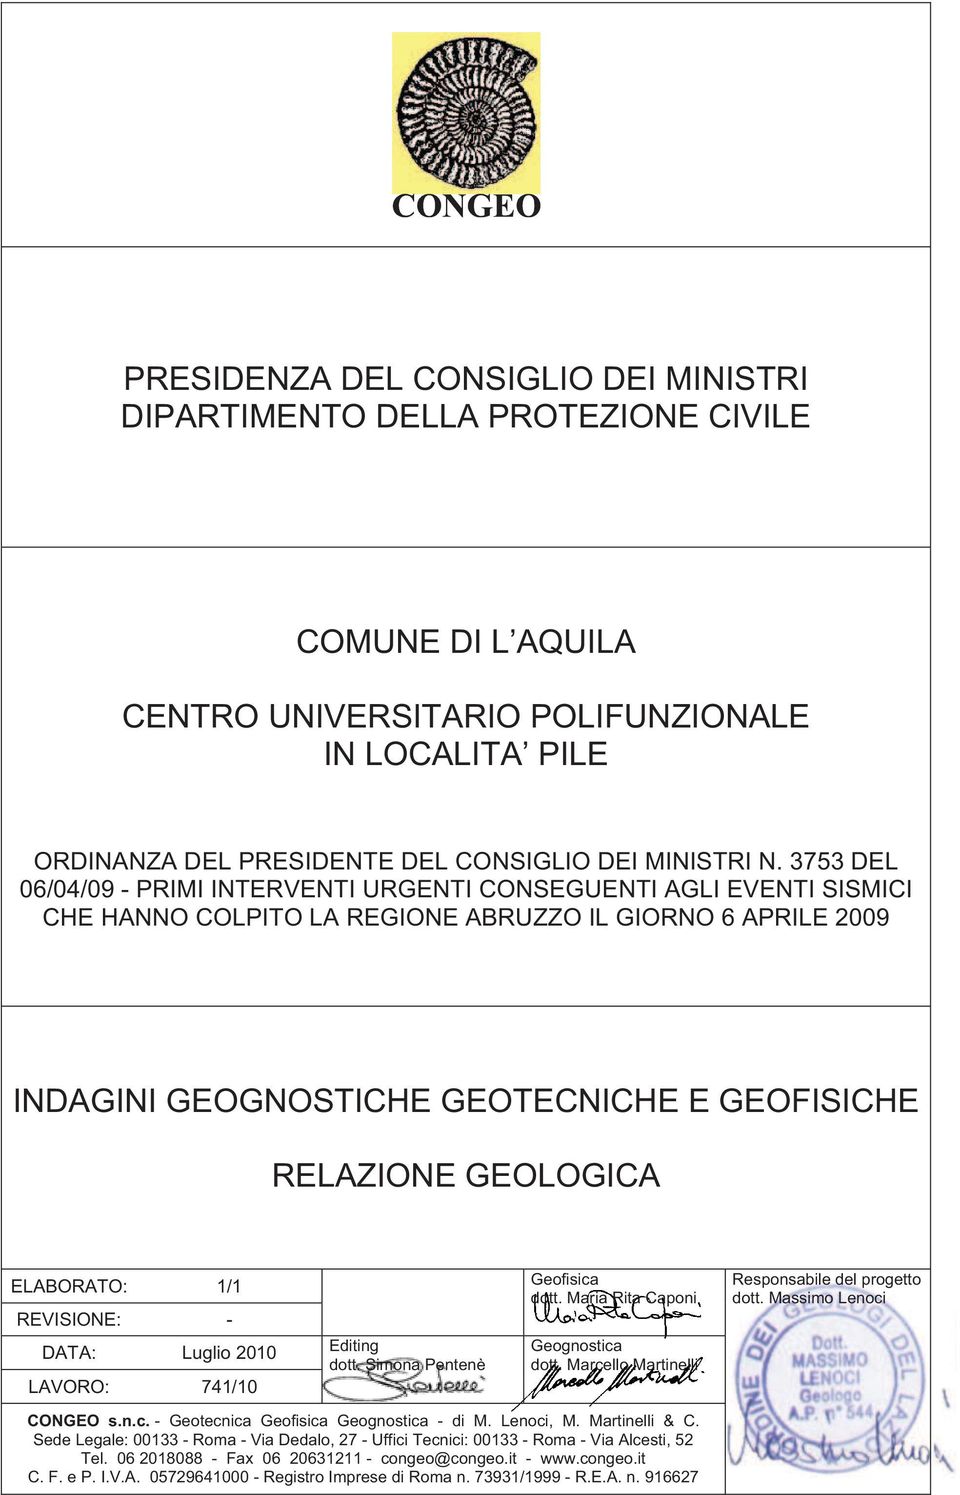 GEOLOGICA ELABORATO: 1/1 REVISIONE: - DATA: Luglio 2010 LAVORO: 741/10 Editing dott. Simona Pentenè Geofisica dott. Maria Rita Caponi Geognostica dott.